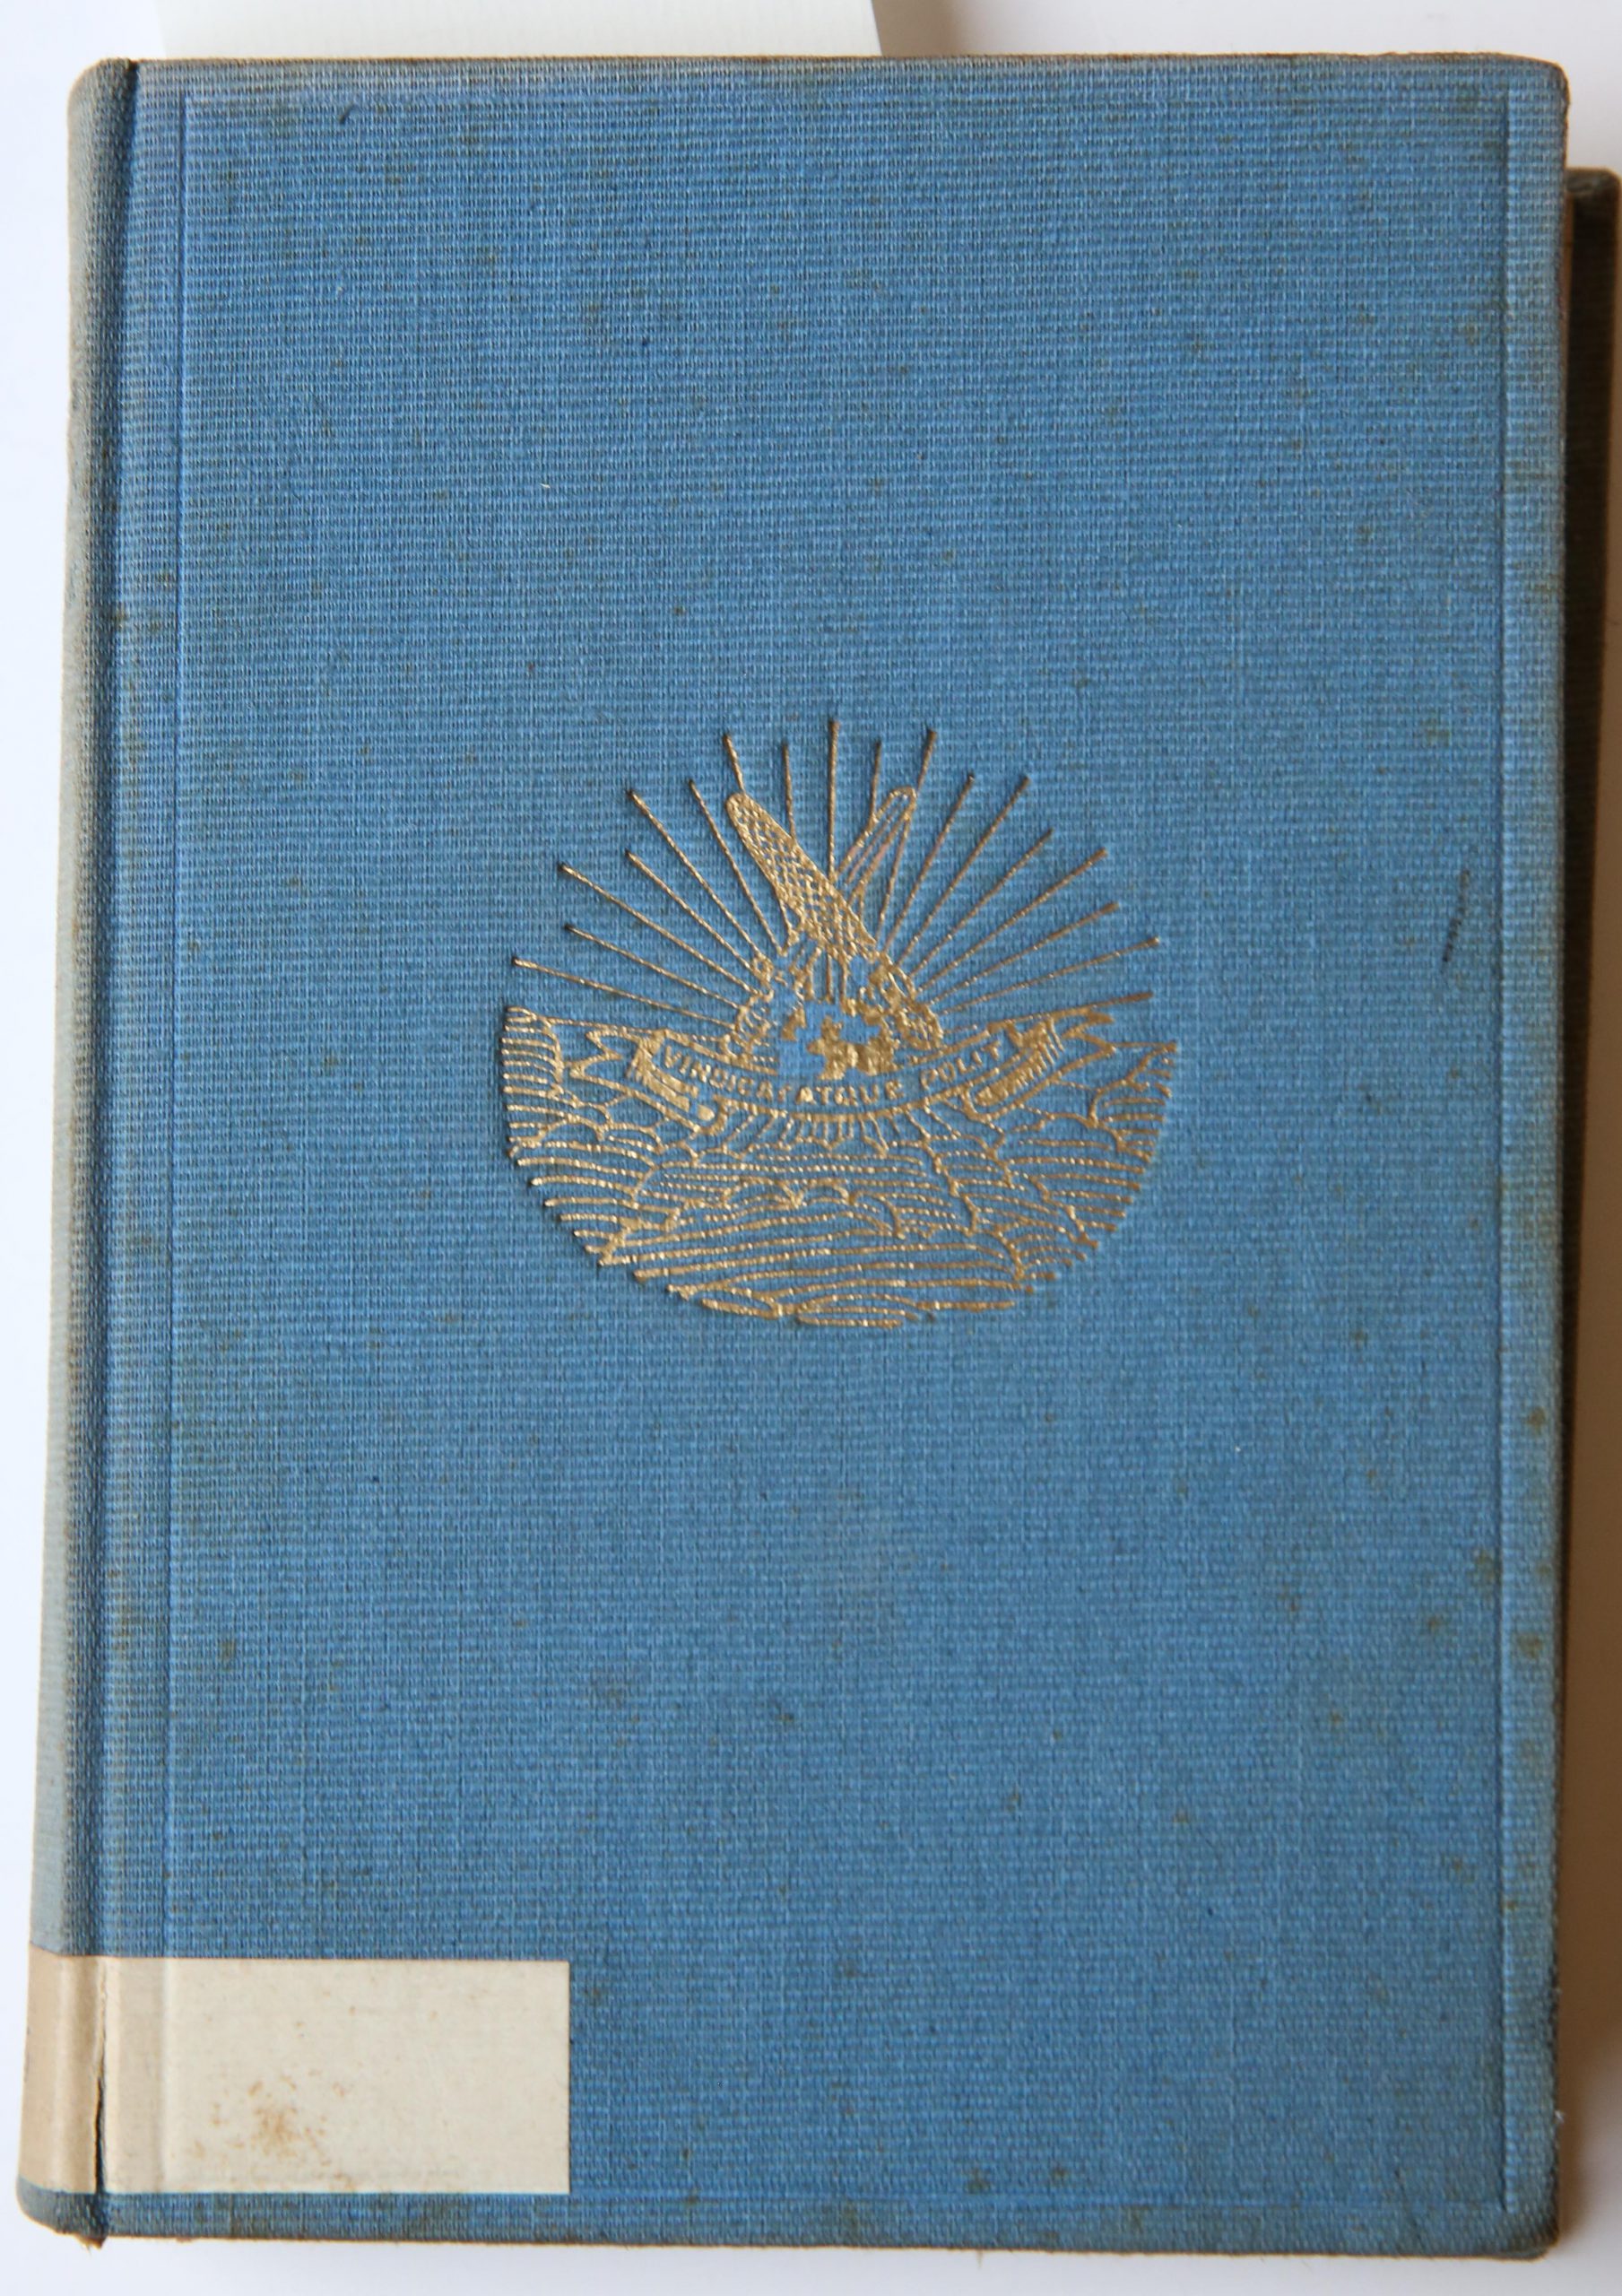 Groninger studenten Almanak voor het jaar 1929, Groningsch Studentencorps Vindicat atque Polit M. De Waal Groningen, 338 pp.